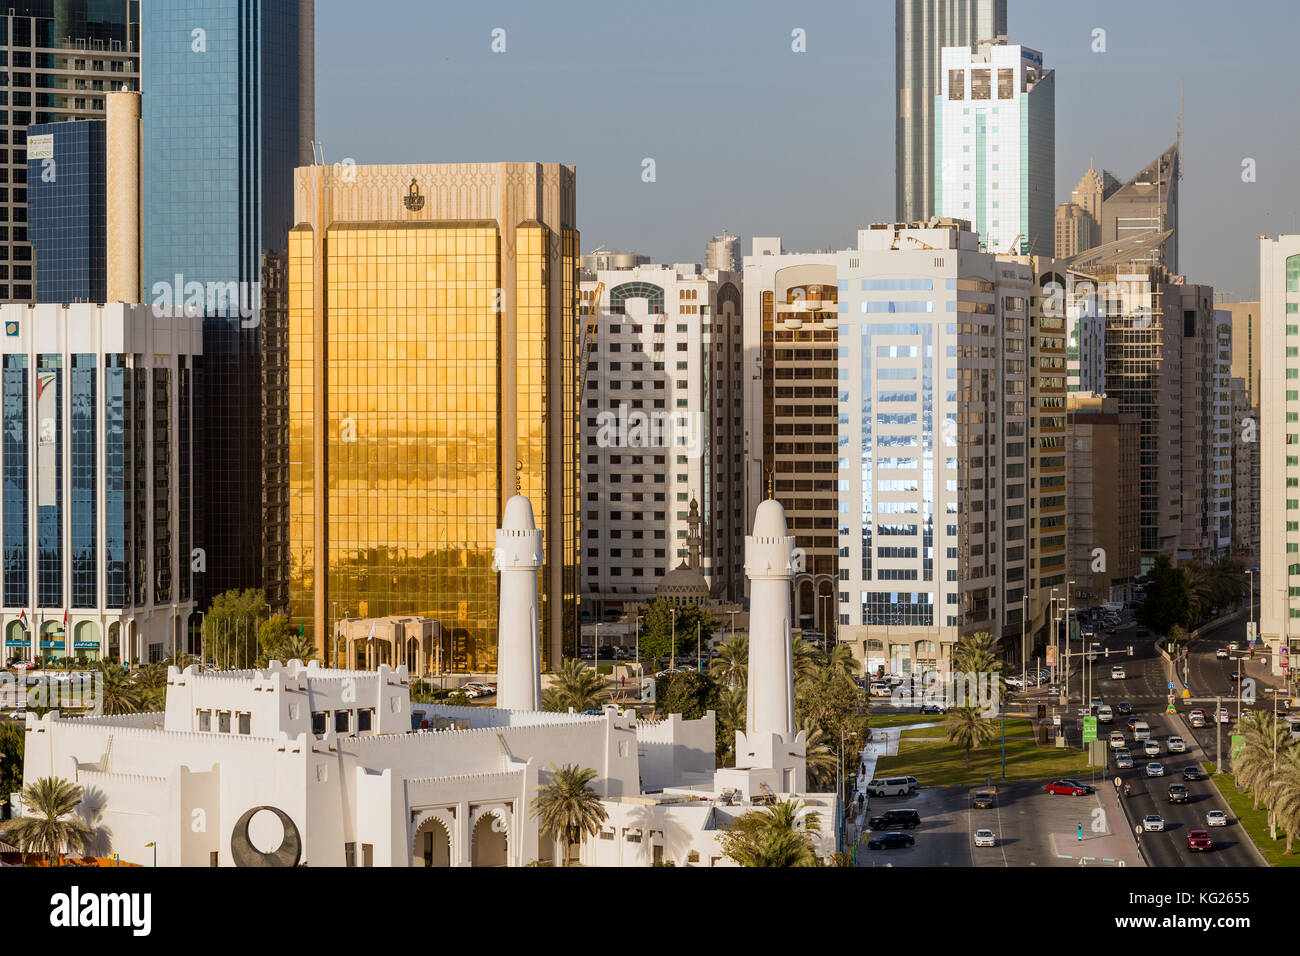 Modern city skyline, Abu Dhabi, United Arab Emirates, Middle East Stock Photo